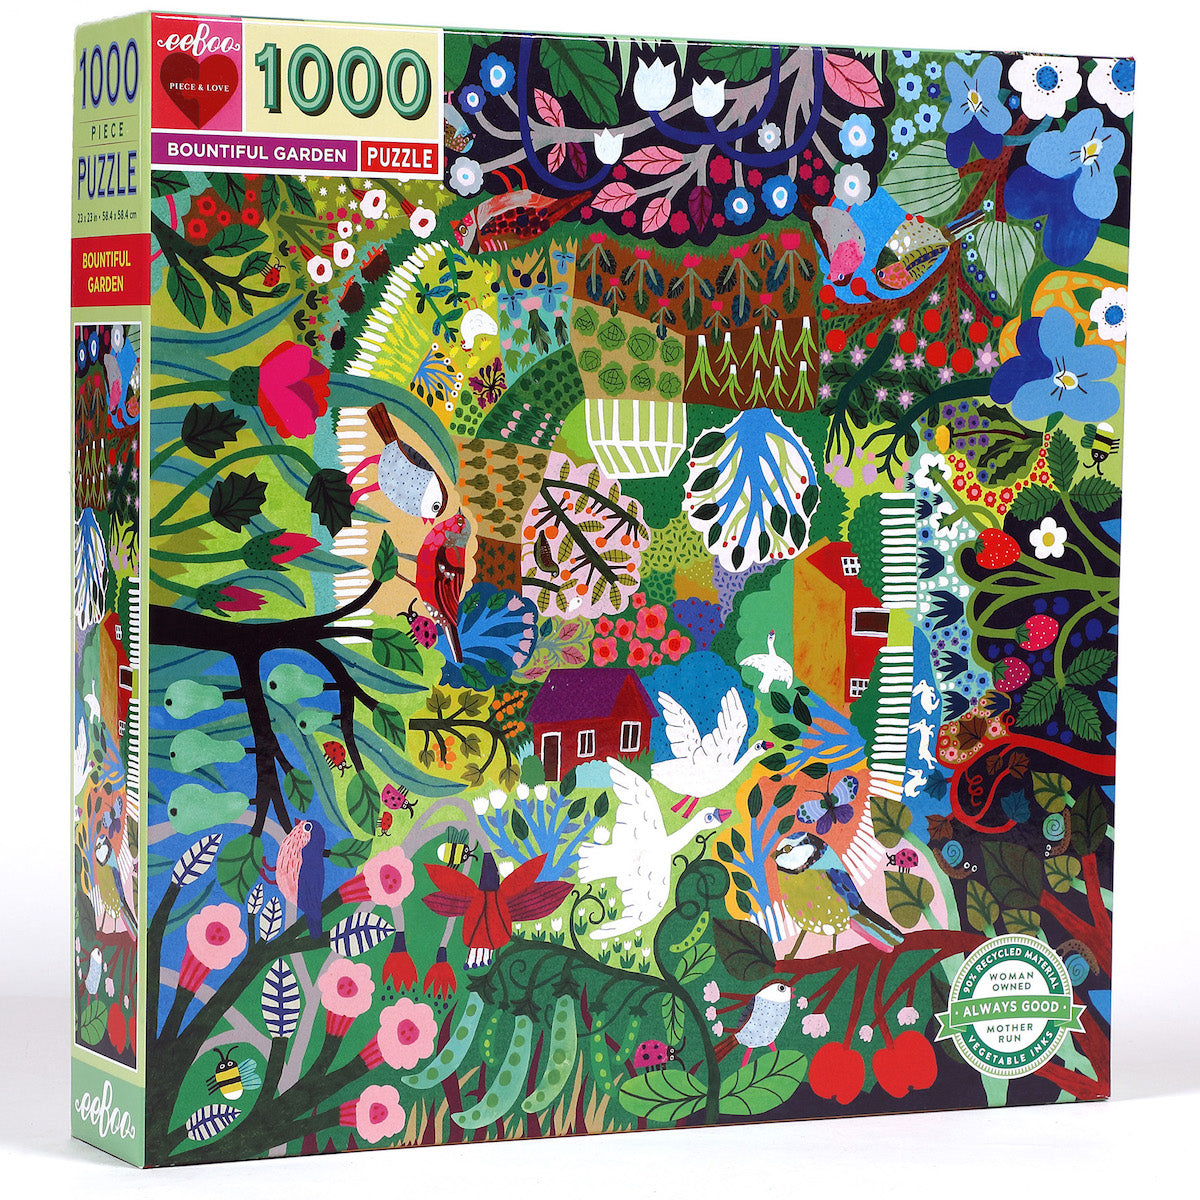 Bountiful Garden eeBoo Puzzle 1000pcs